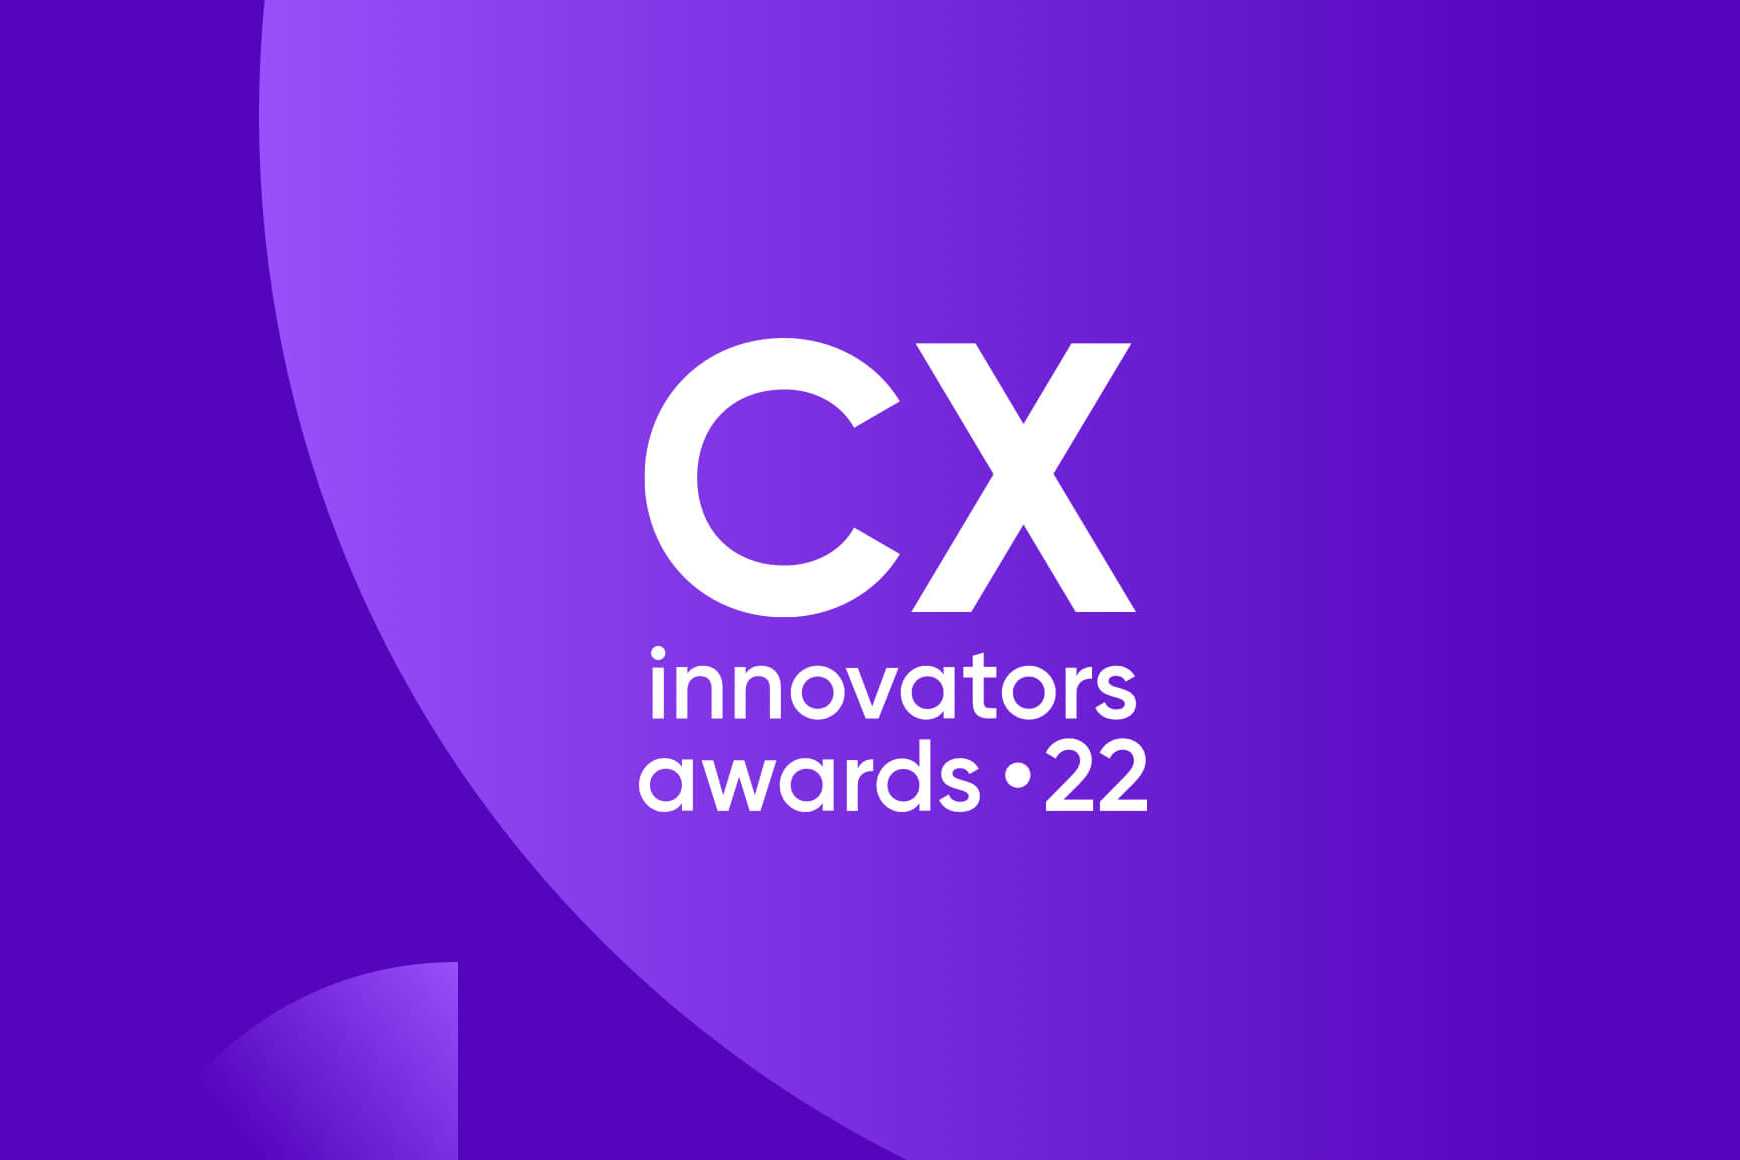 Descubra cómo los innovadores de la CX están encontrando una mejor manera de poner a los clientes en primer lugar.